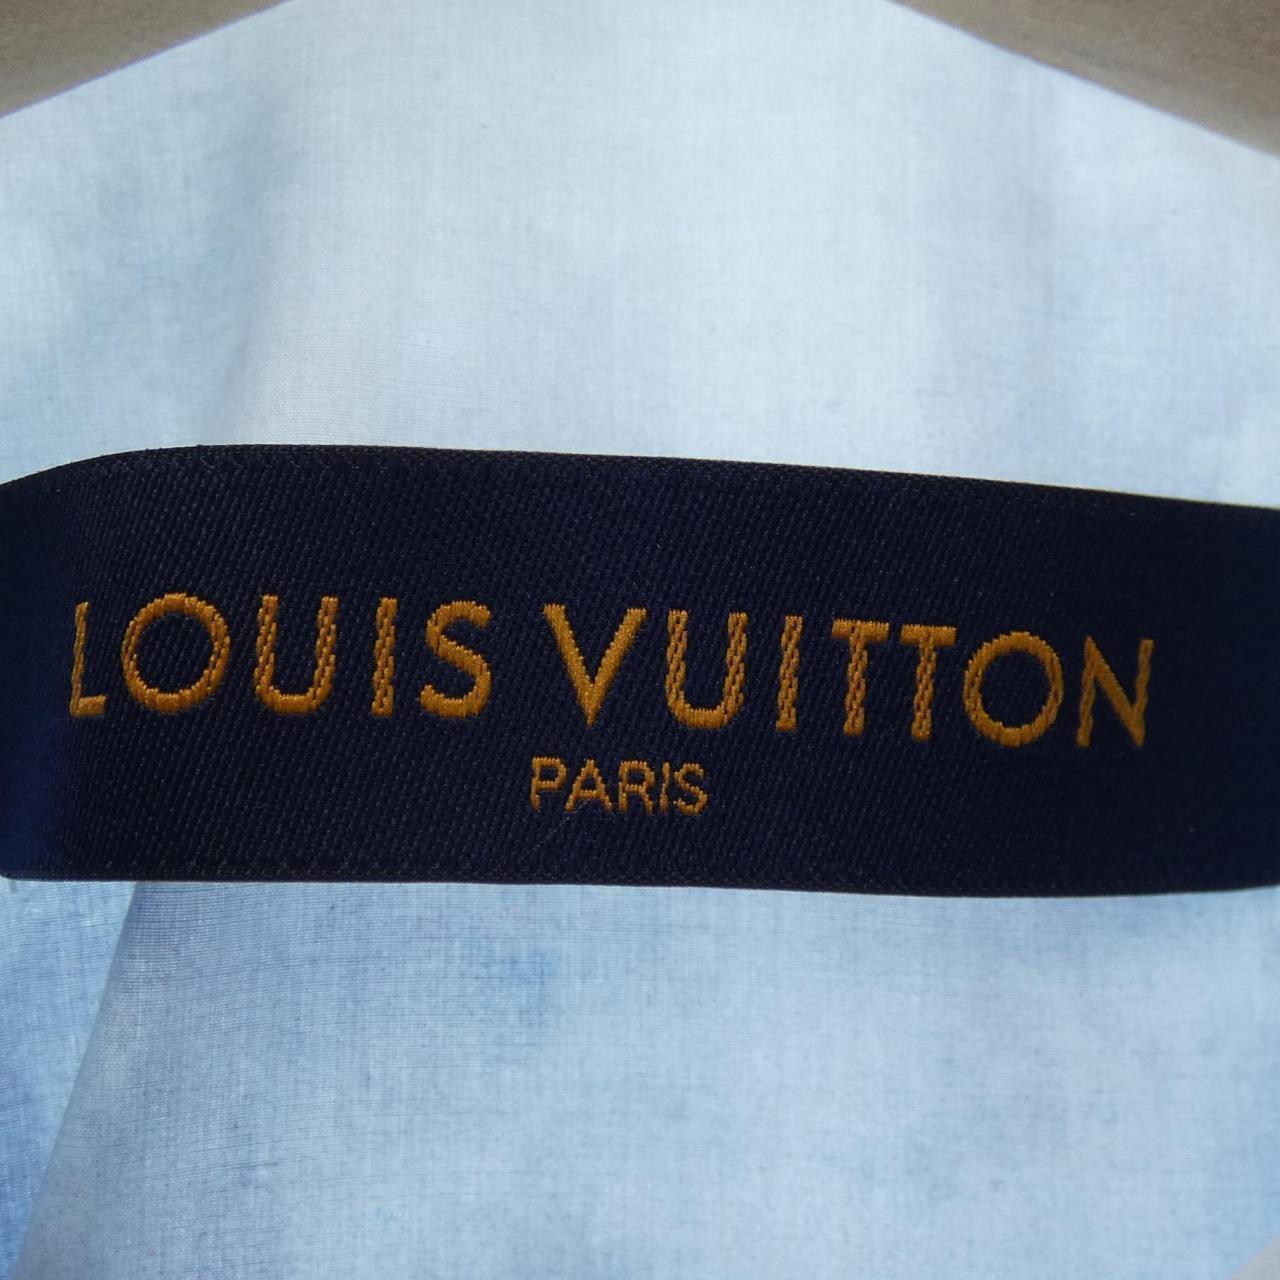 Authentic LOUIS VUITTON Tshirt #241-003-097-7674